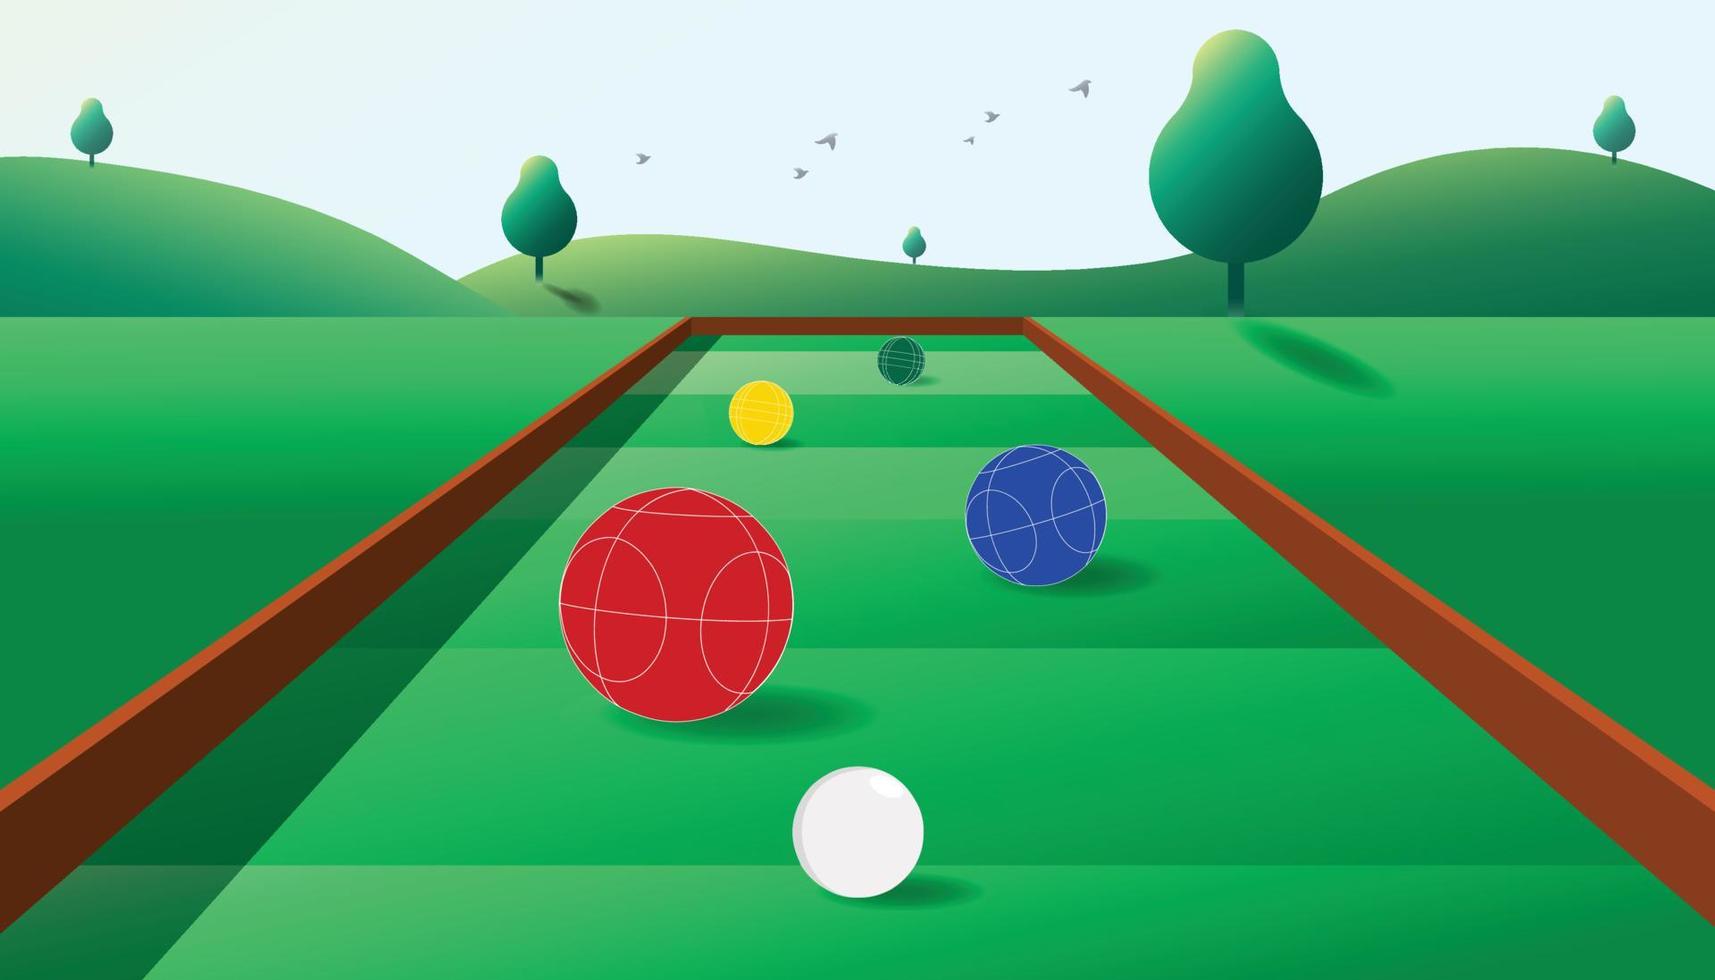 bakgrund illustration av spelar sporter boccia med fyra stor bollar och ett små boll, morgon- atmosfär med naturlig landskap. vektor